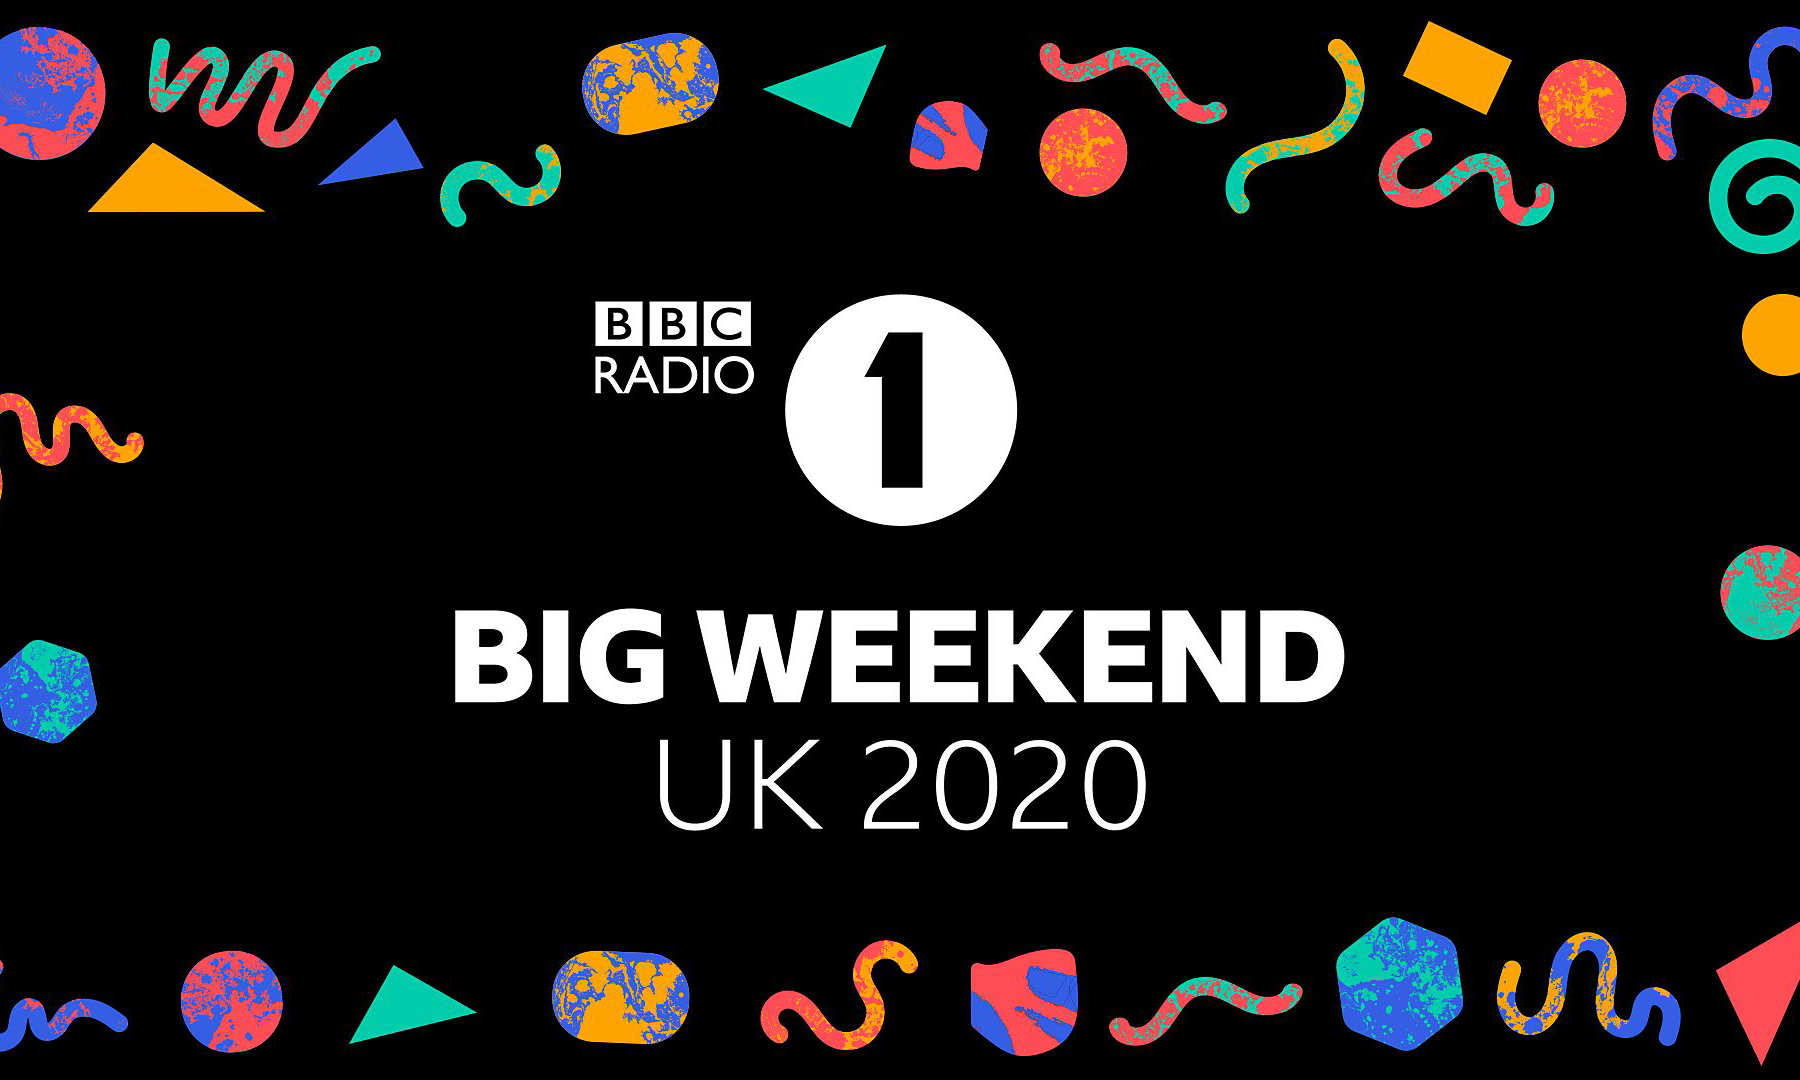 英国 BBC 电视台将于本周五举办线上虚拟音乐节